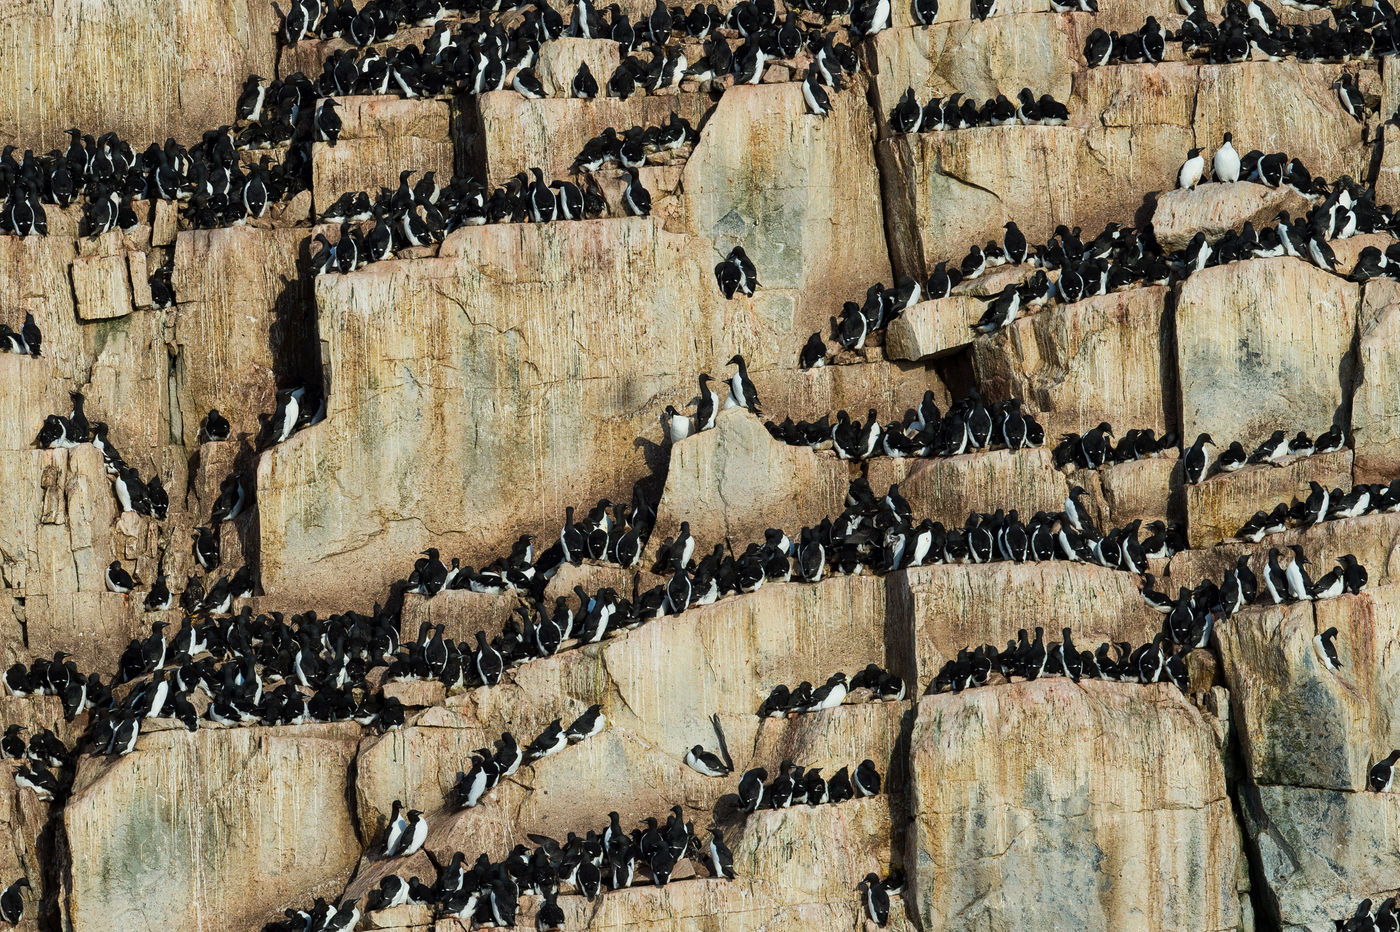 Kortbekzeekoeten zitten opeen gepakt op de steile rotskliffen. © David 'Billy' Herman